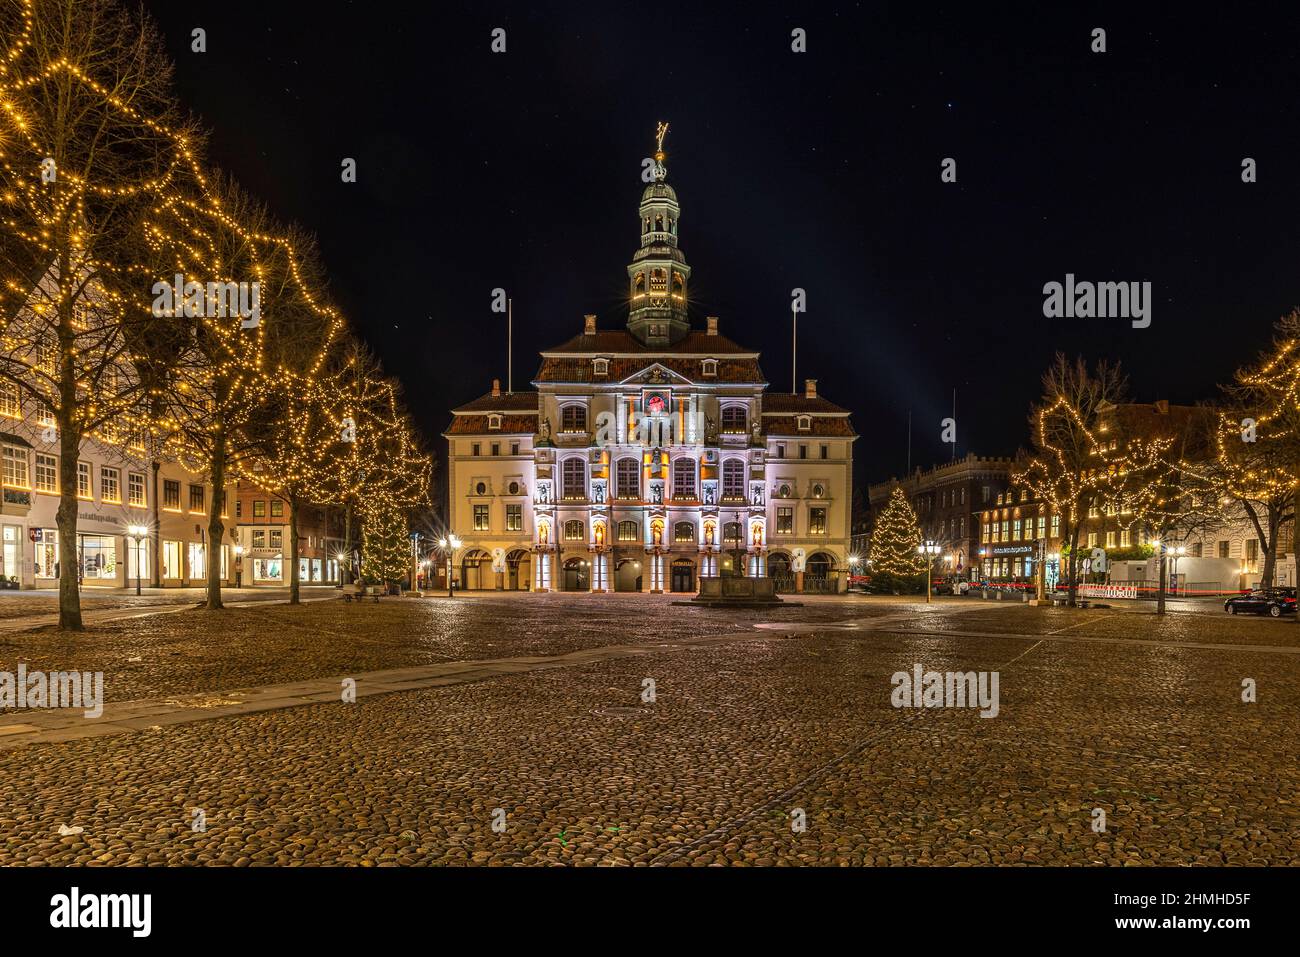 Das historische Rathaus in Lüneburg, das im Dezember beleuchtet wird Stockfoto